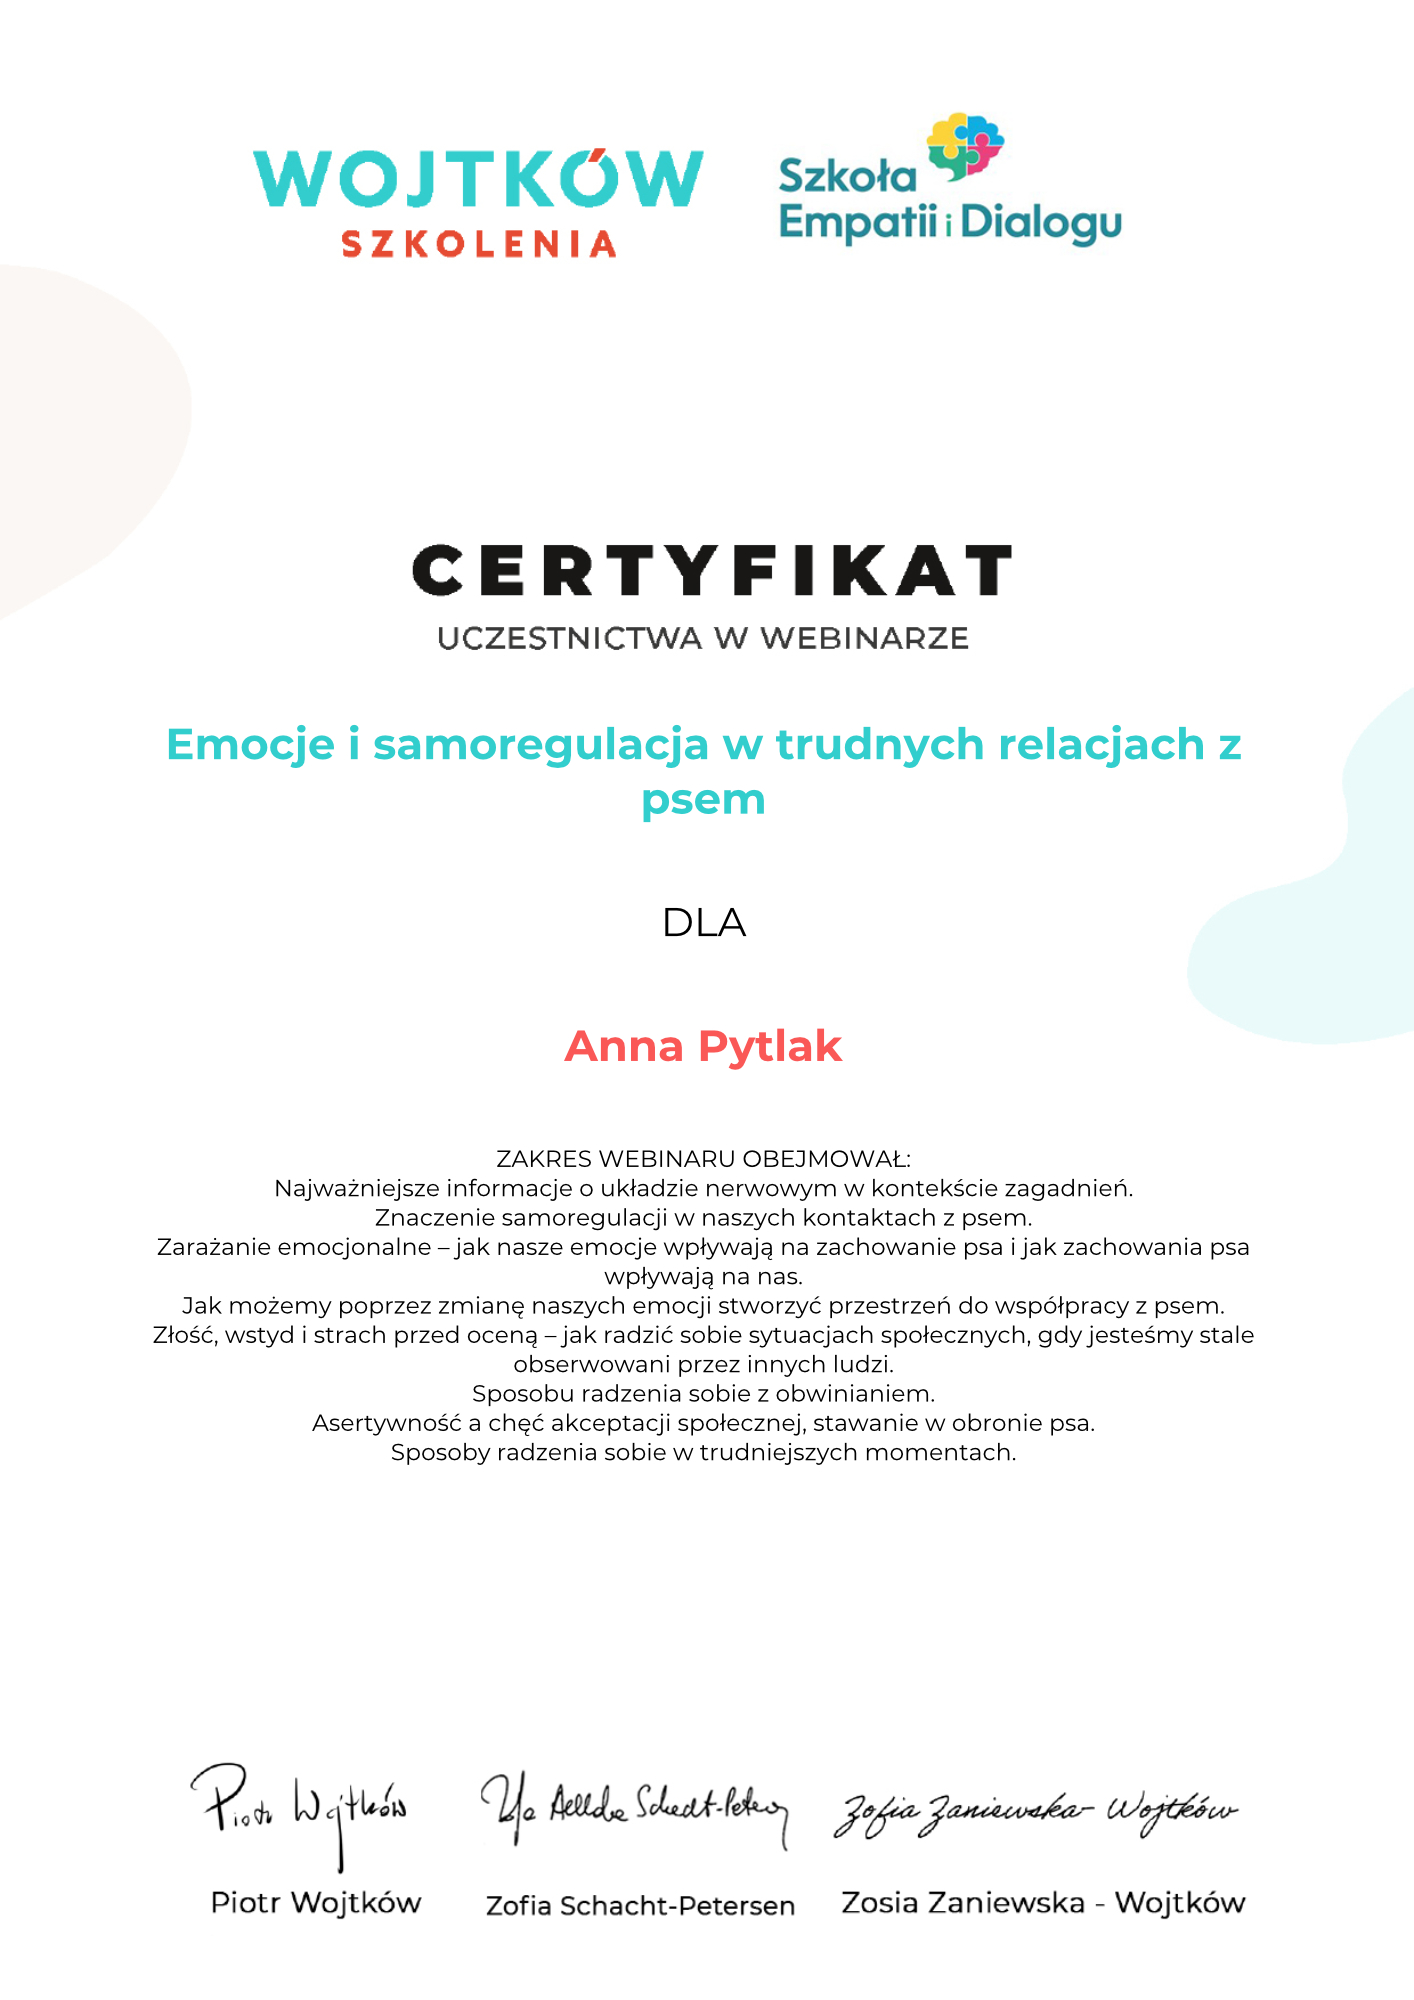 Anna-Pytlak-Emocje-i-samoregulacja-w-trudnych-relacjach-z-psem-Certyfikat-webinar-z-gosciem-Wojtkow-Szkolenia